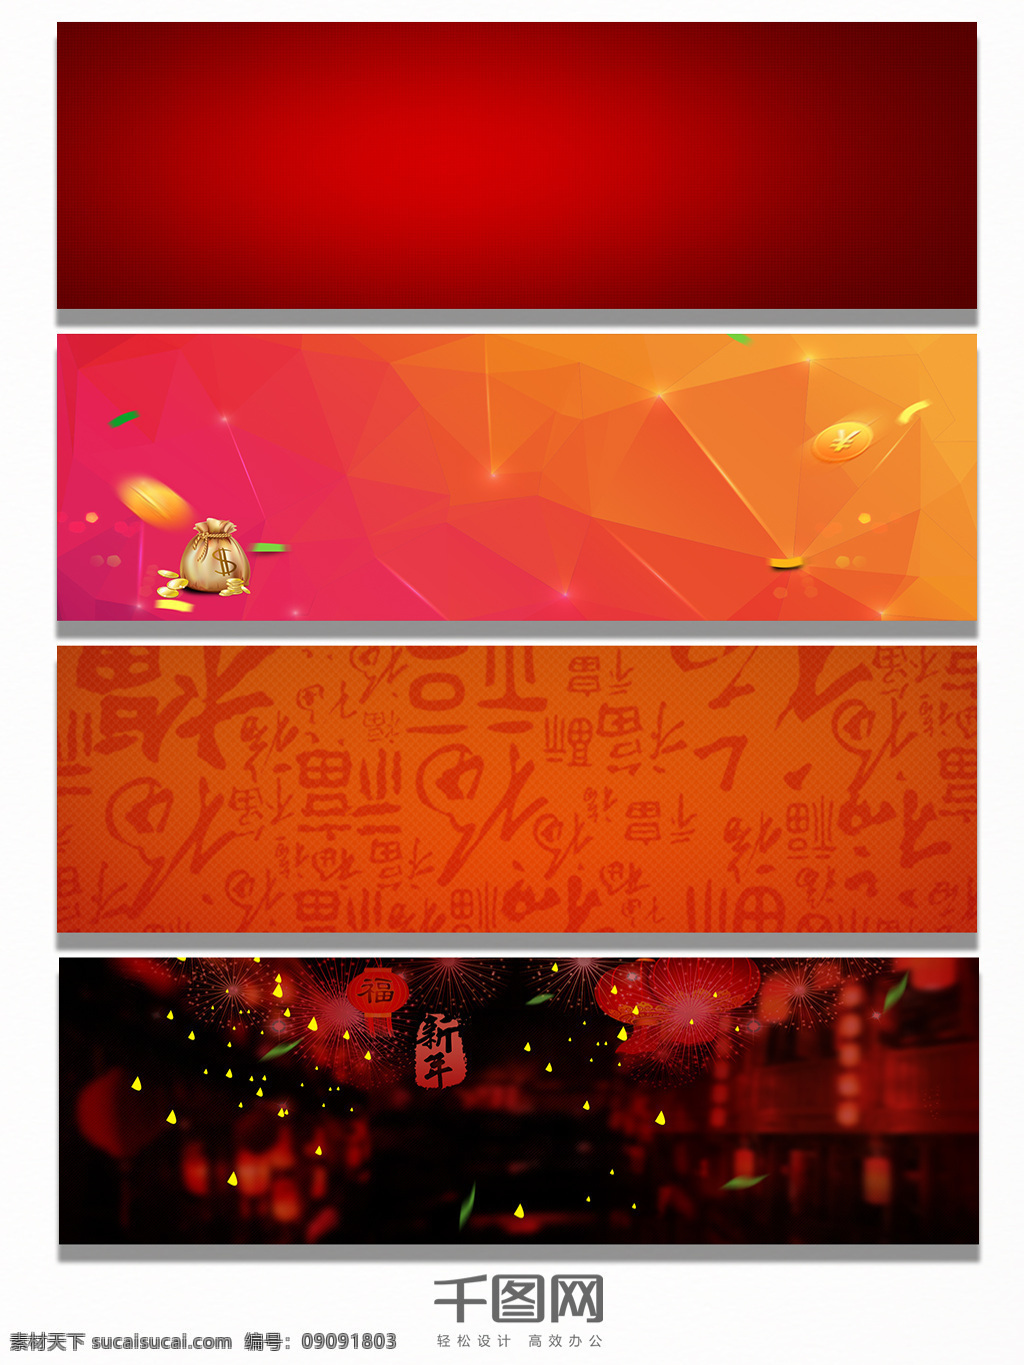 平面 红色 节日 背景 banner 狂欢 中国 春节 文字 橙色 质感 过年 底纹 金钱 礼物